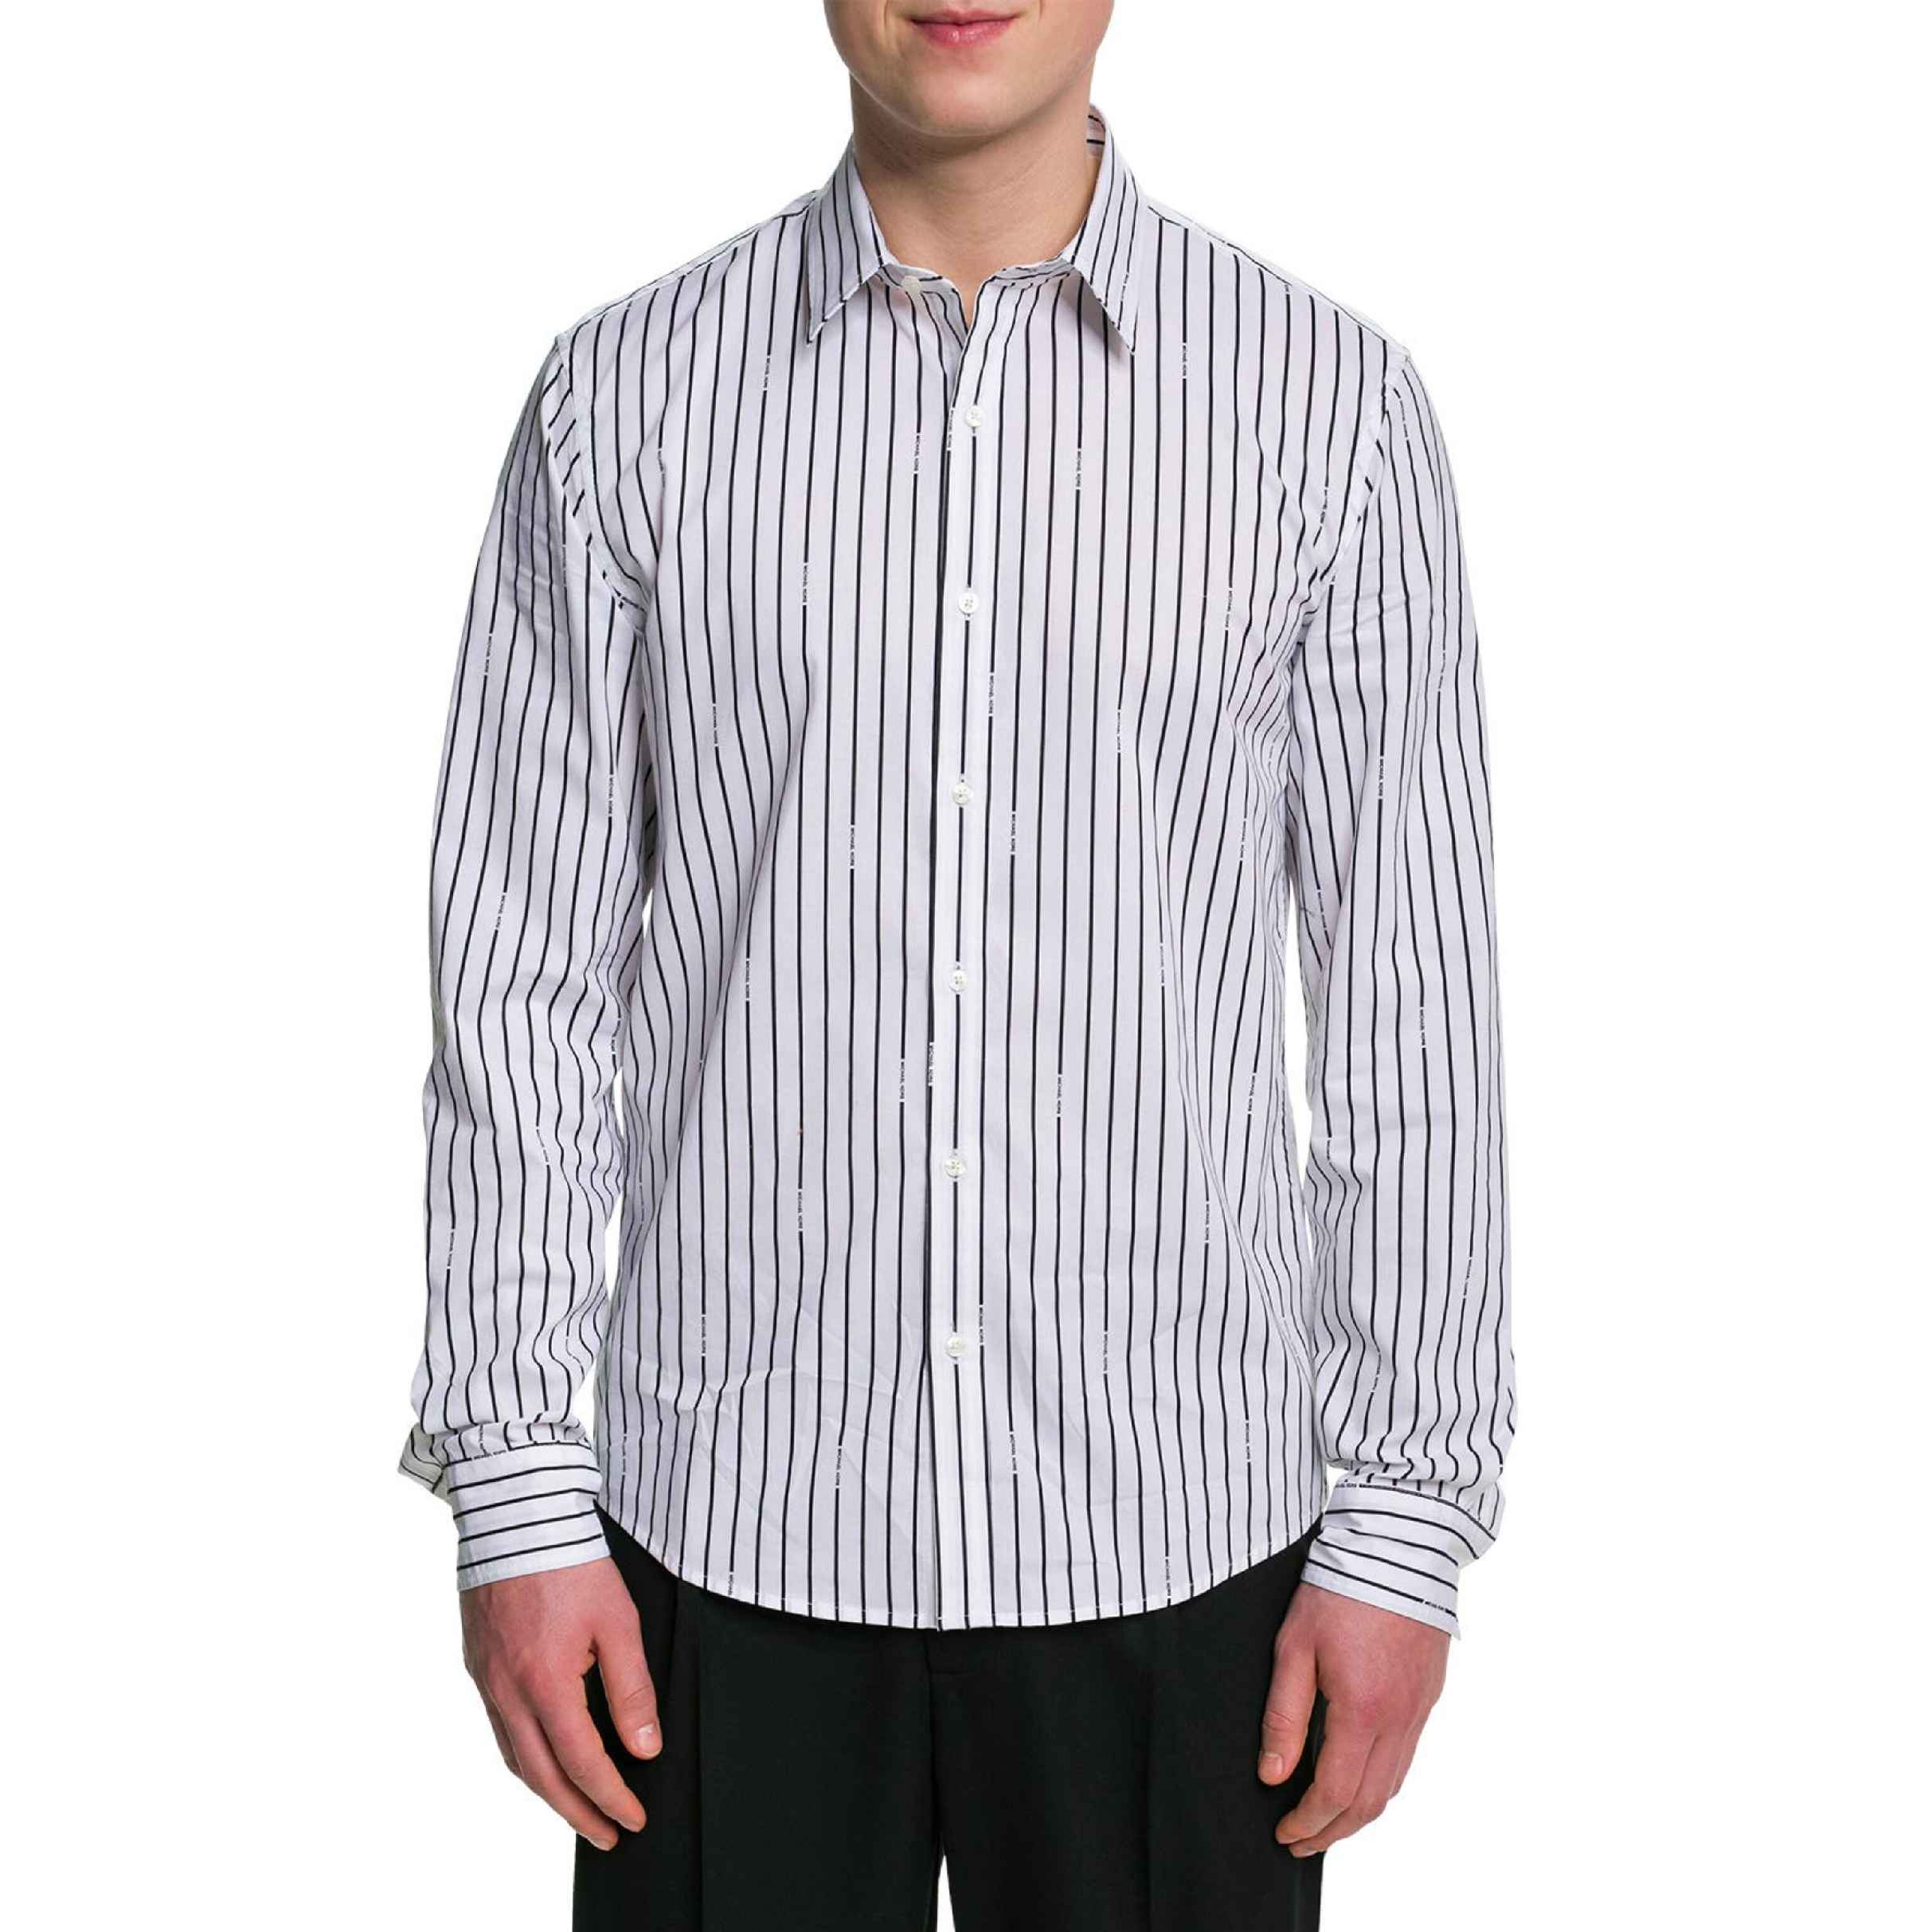 نکته خرید - قیمت روز پیراهن آستین بلند مردانه مایکل کورس مدل Casual-Hemd gestreift خرید